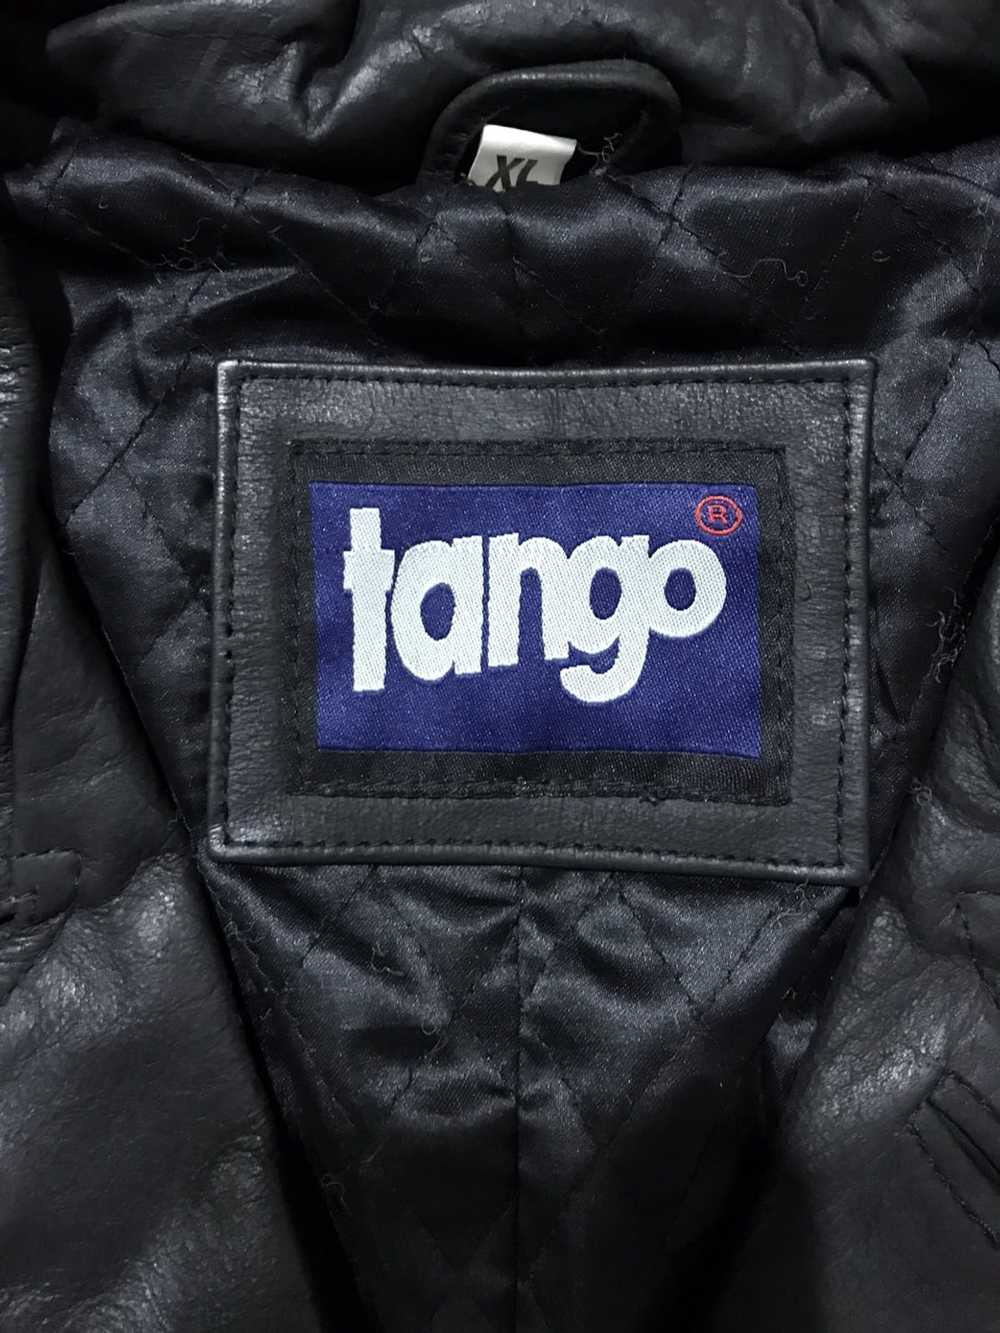 Genuine Leather × Leather × Leather Jacket TANGO … - image 8